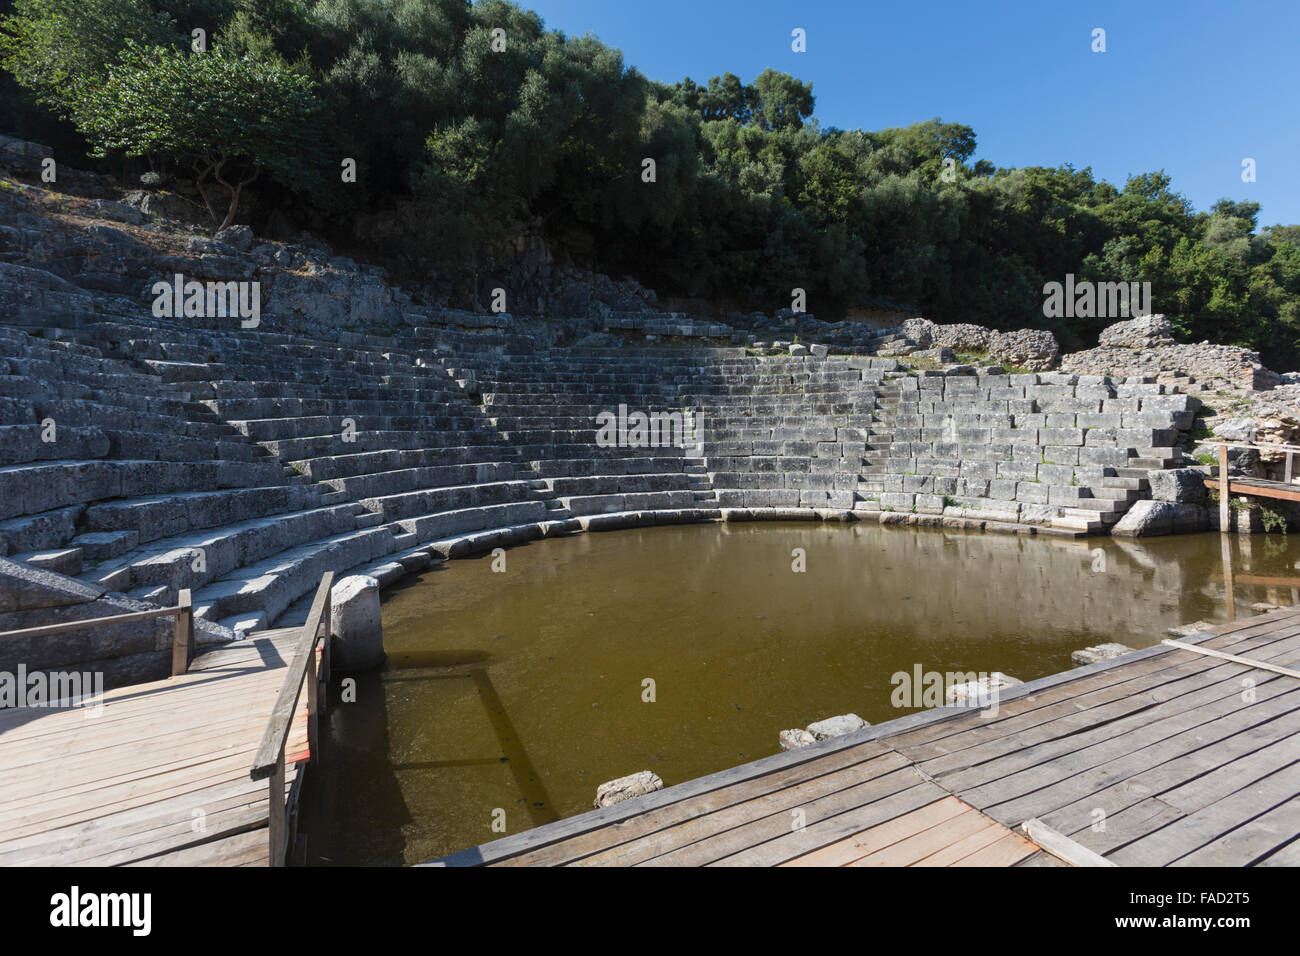 L'Albanie. Site archéologique de Butrint ou Buthrotum, Site du patrimoine mondial de l'UNESCO. Le théâtre. Banque D'Images